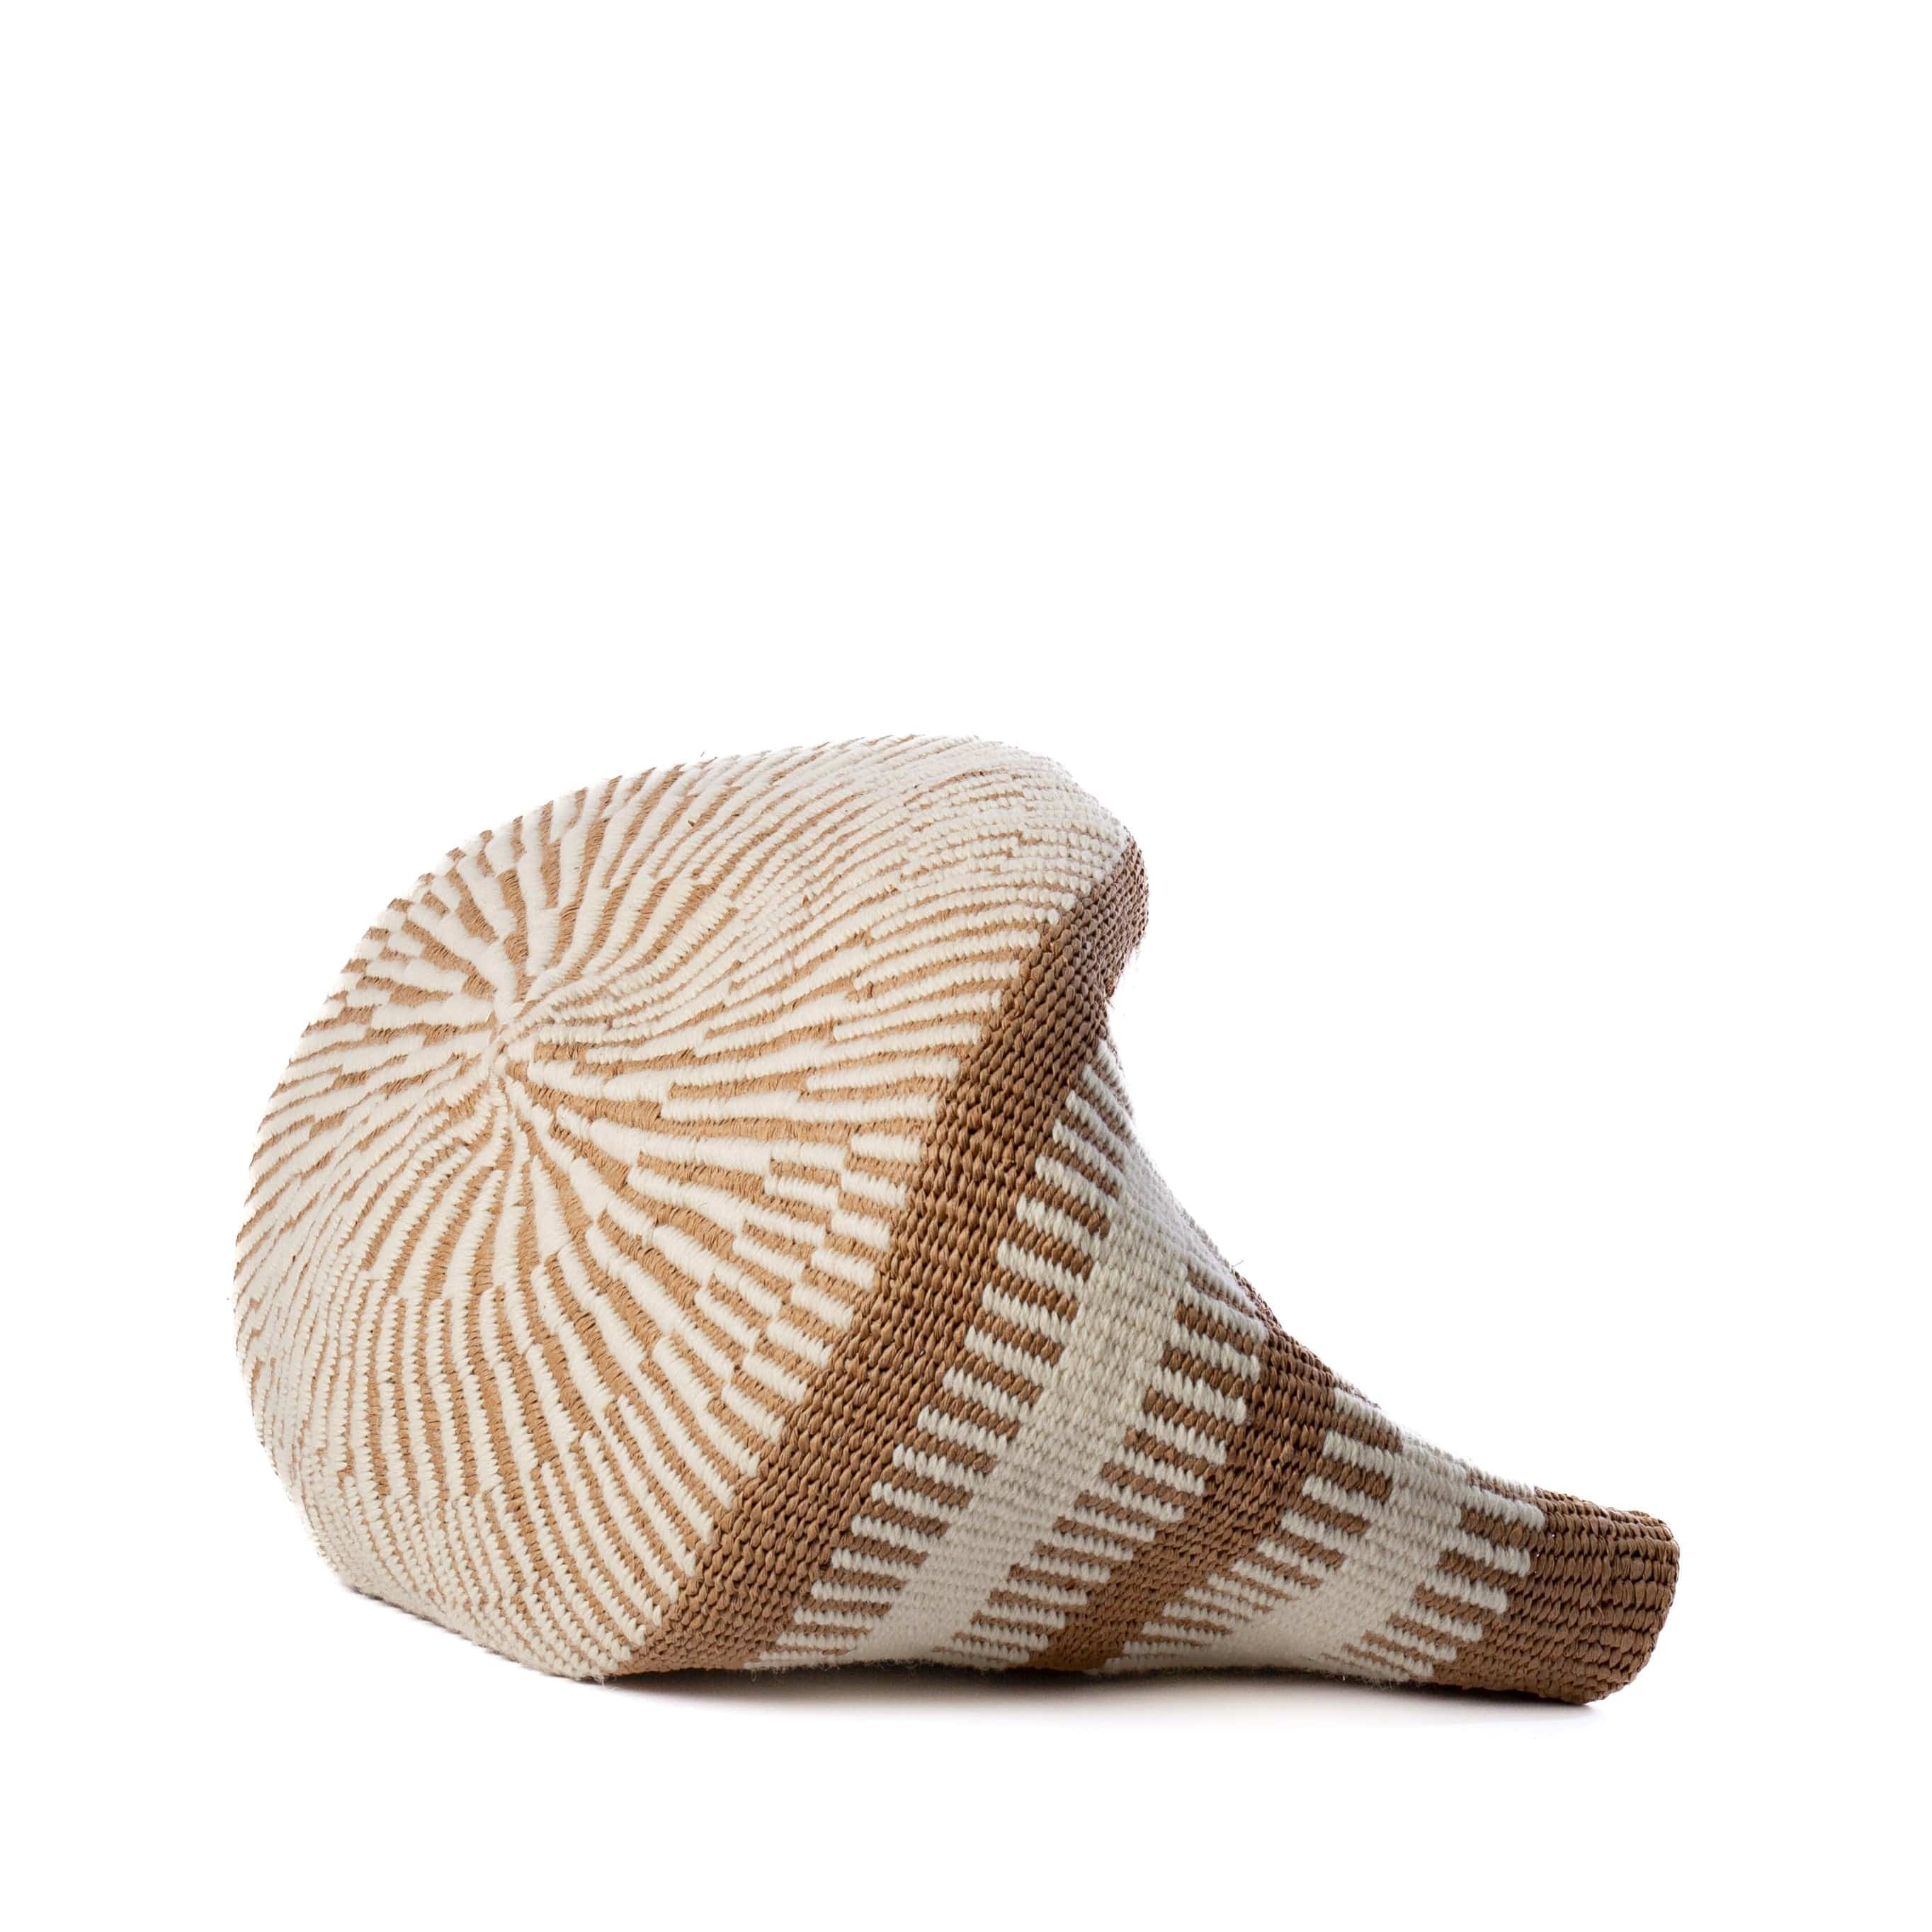 Mifuko Wool and paper Small basket S Pamba basket | White rib weave S